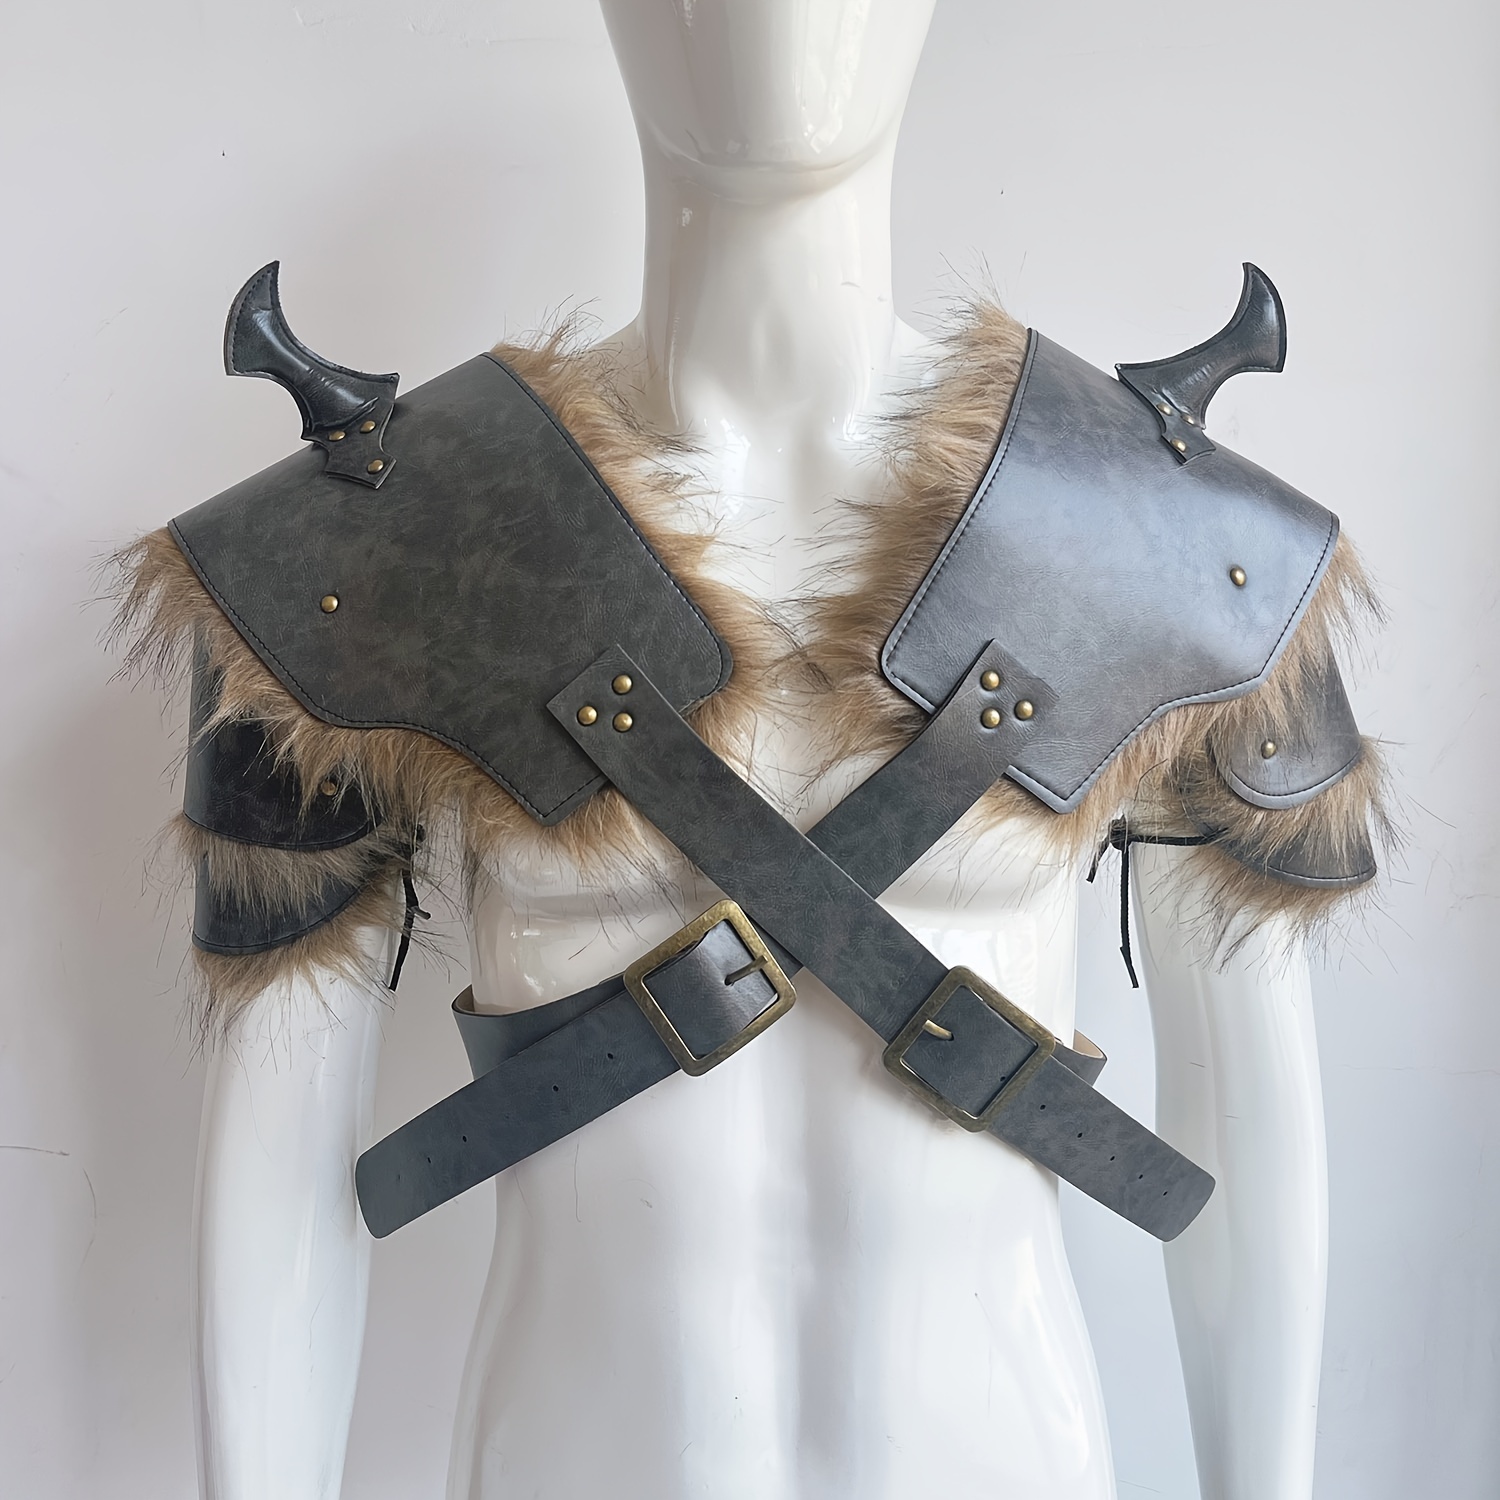 Armadura vikinga en el pecho y hombros, decoración para disfraz de